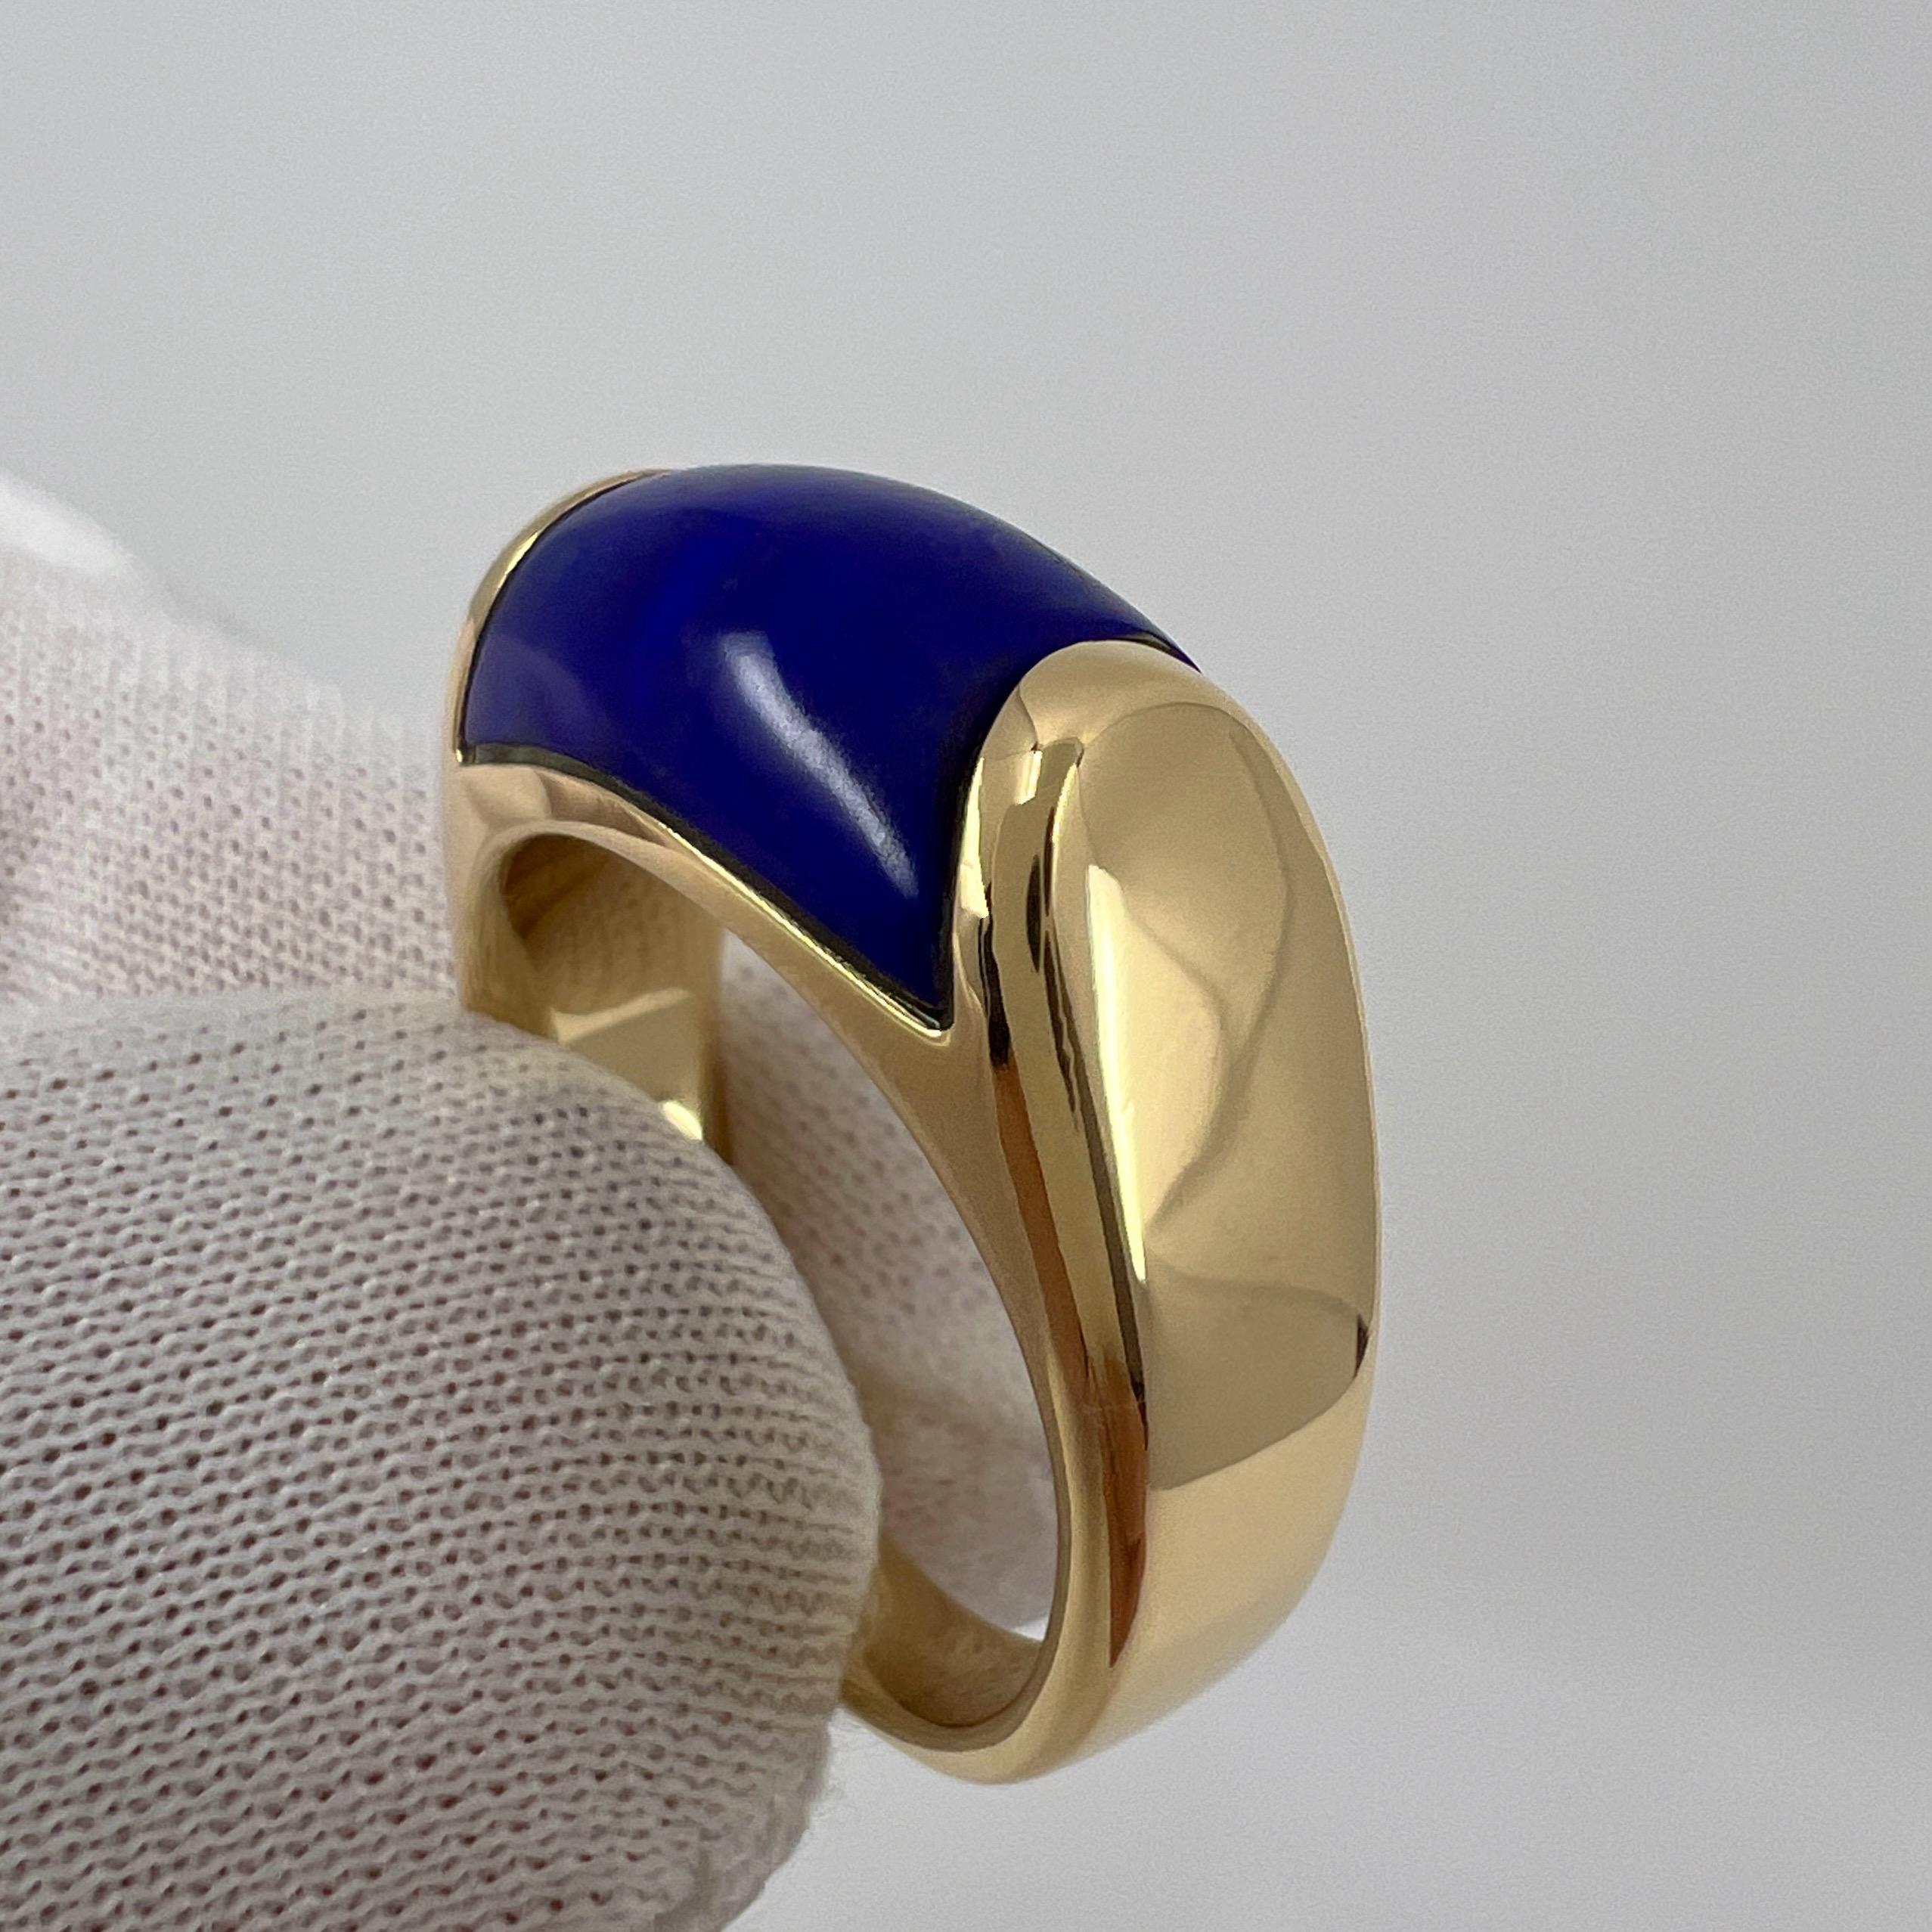 Bvlgari Bulgari Tronchetto 18k Yellow Gold Lapis Lazuli Ring with Box US6 EU52 For Sale 2